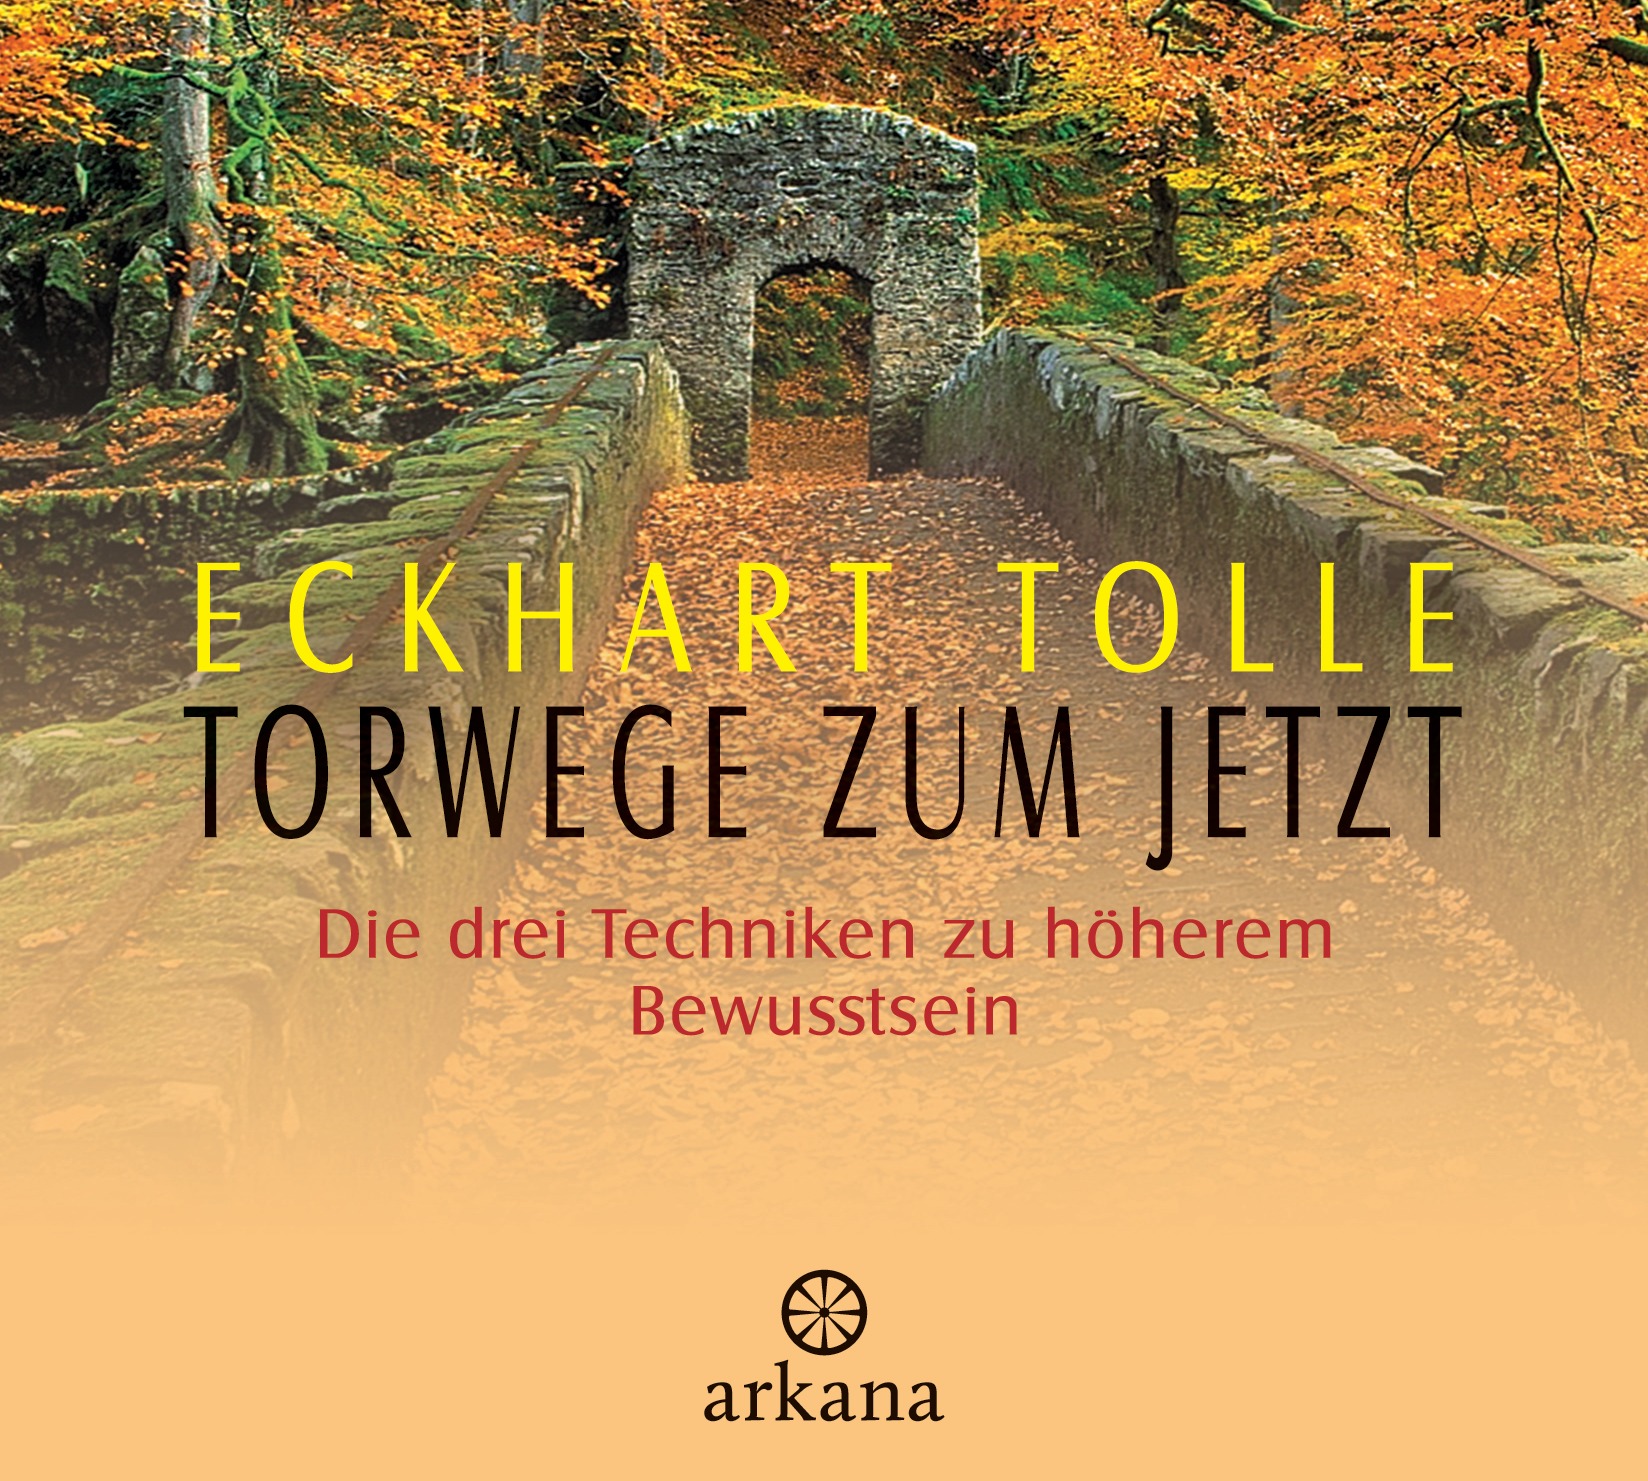 NEU Torwege zum Jetzt Eckhart Tolle 339006 - Picture 1 of 1